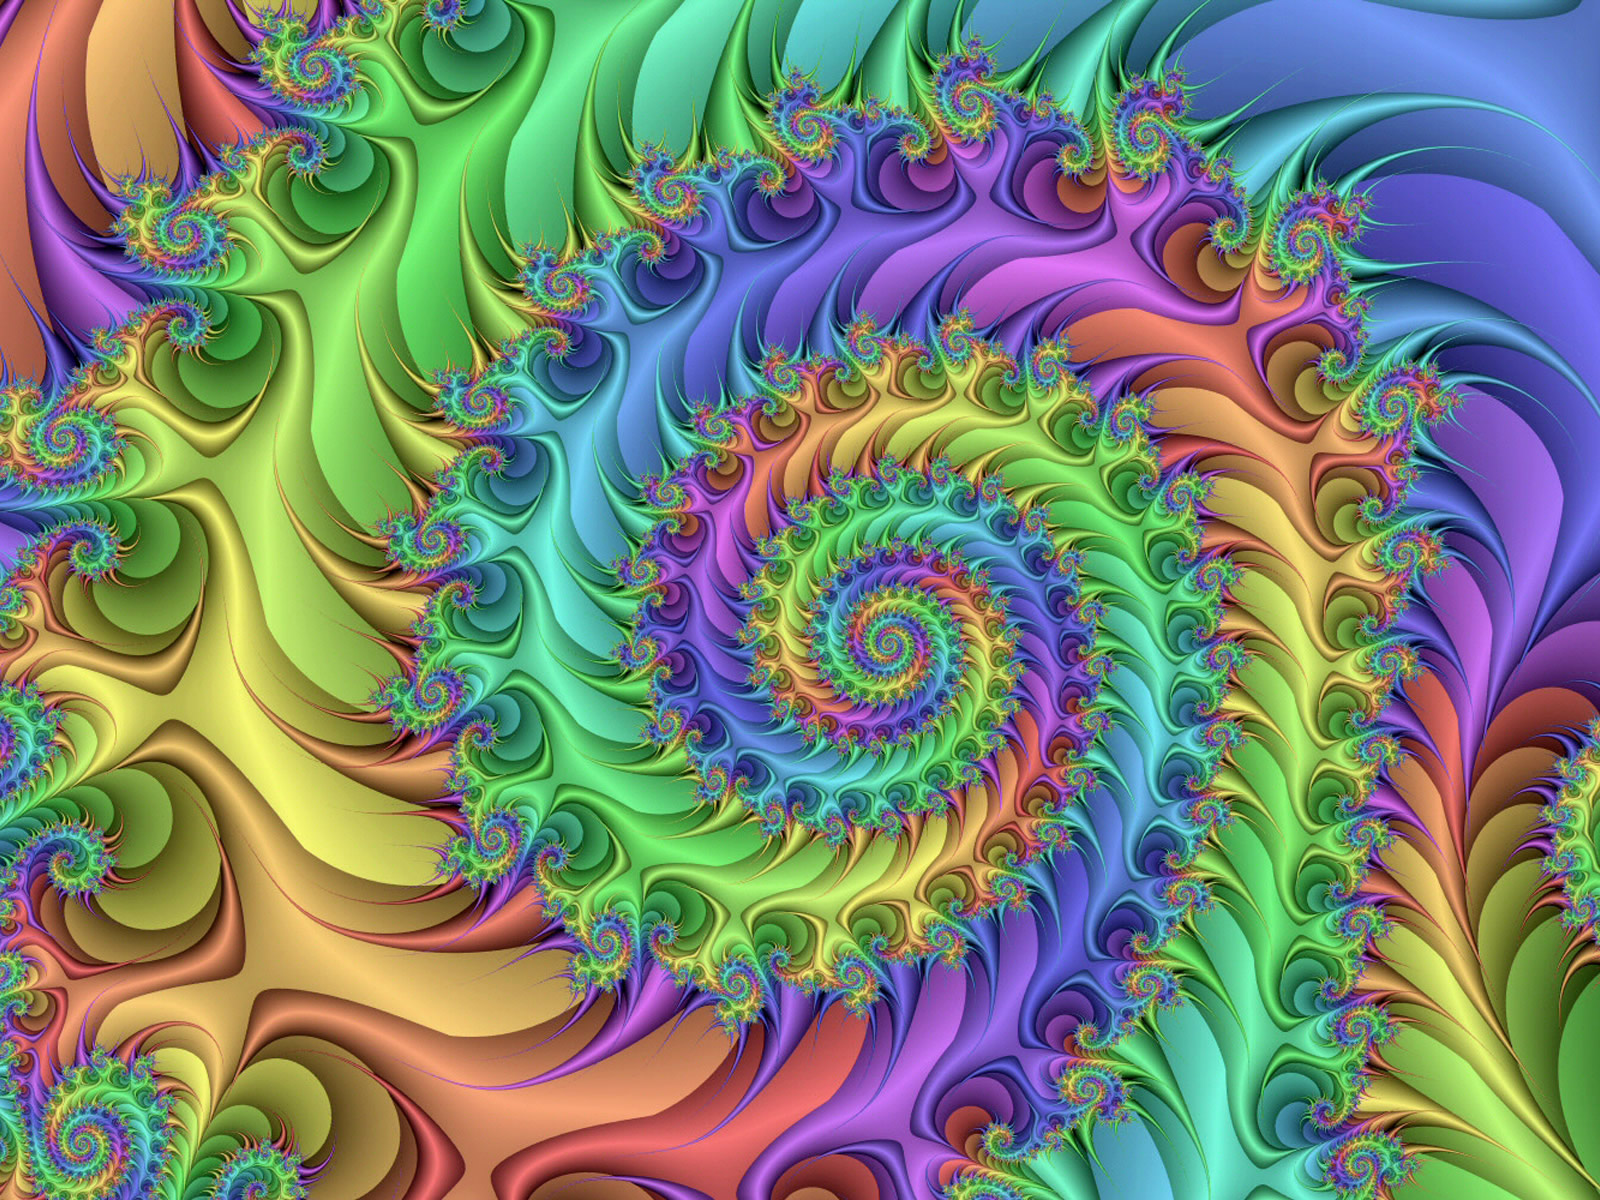 http://4.bp.blogspot.com/-_AGjpbJUVmE/T2VDXjB3fEI/AAAAAAAACXo/4HOZ24wOFto/s1600/Trippy-Colorful-Spiral-Wallpaper.jpg